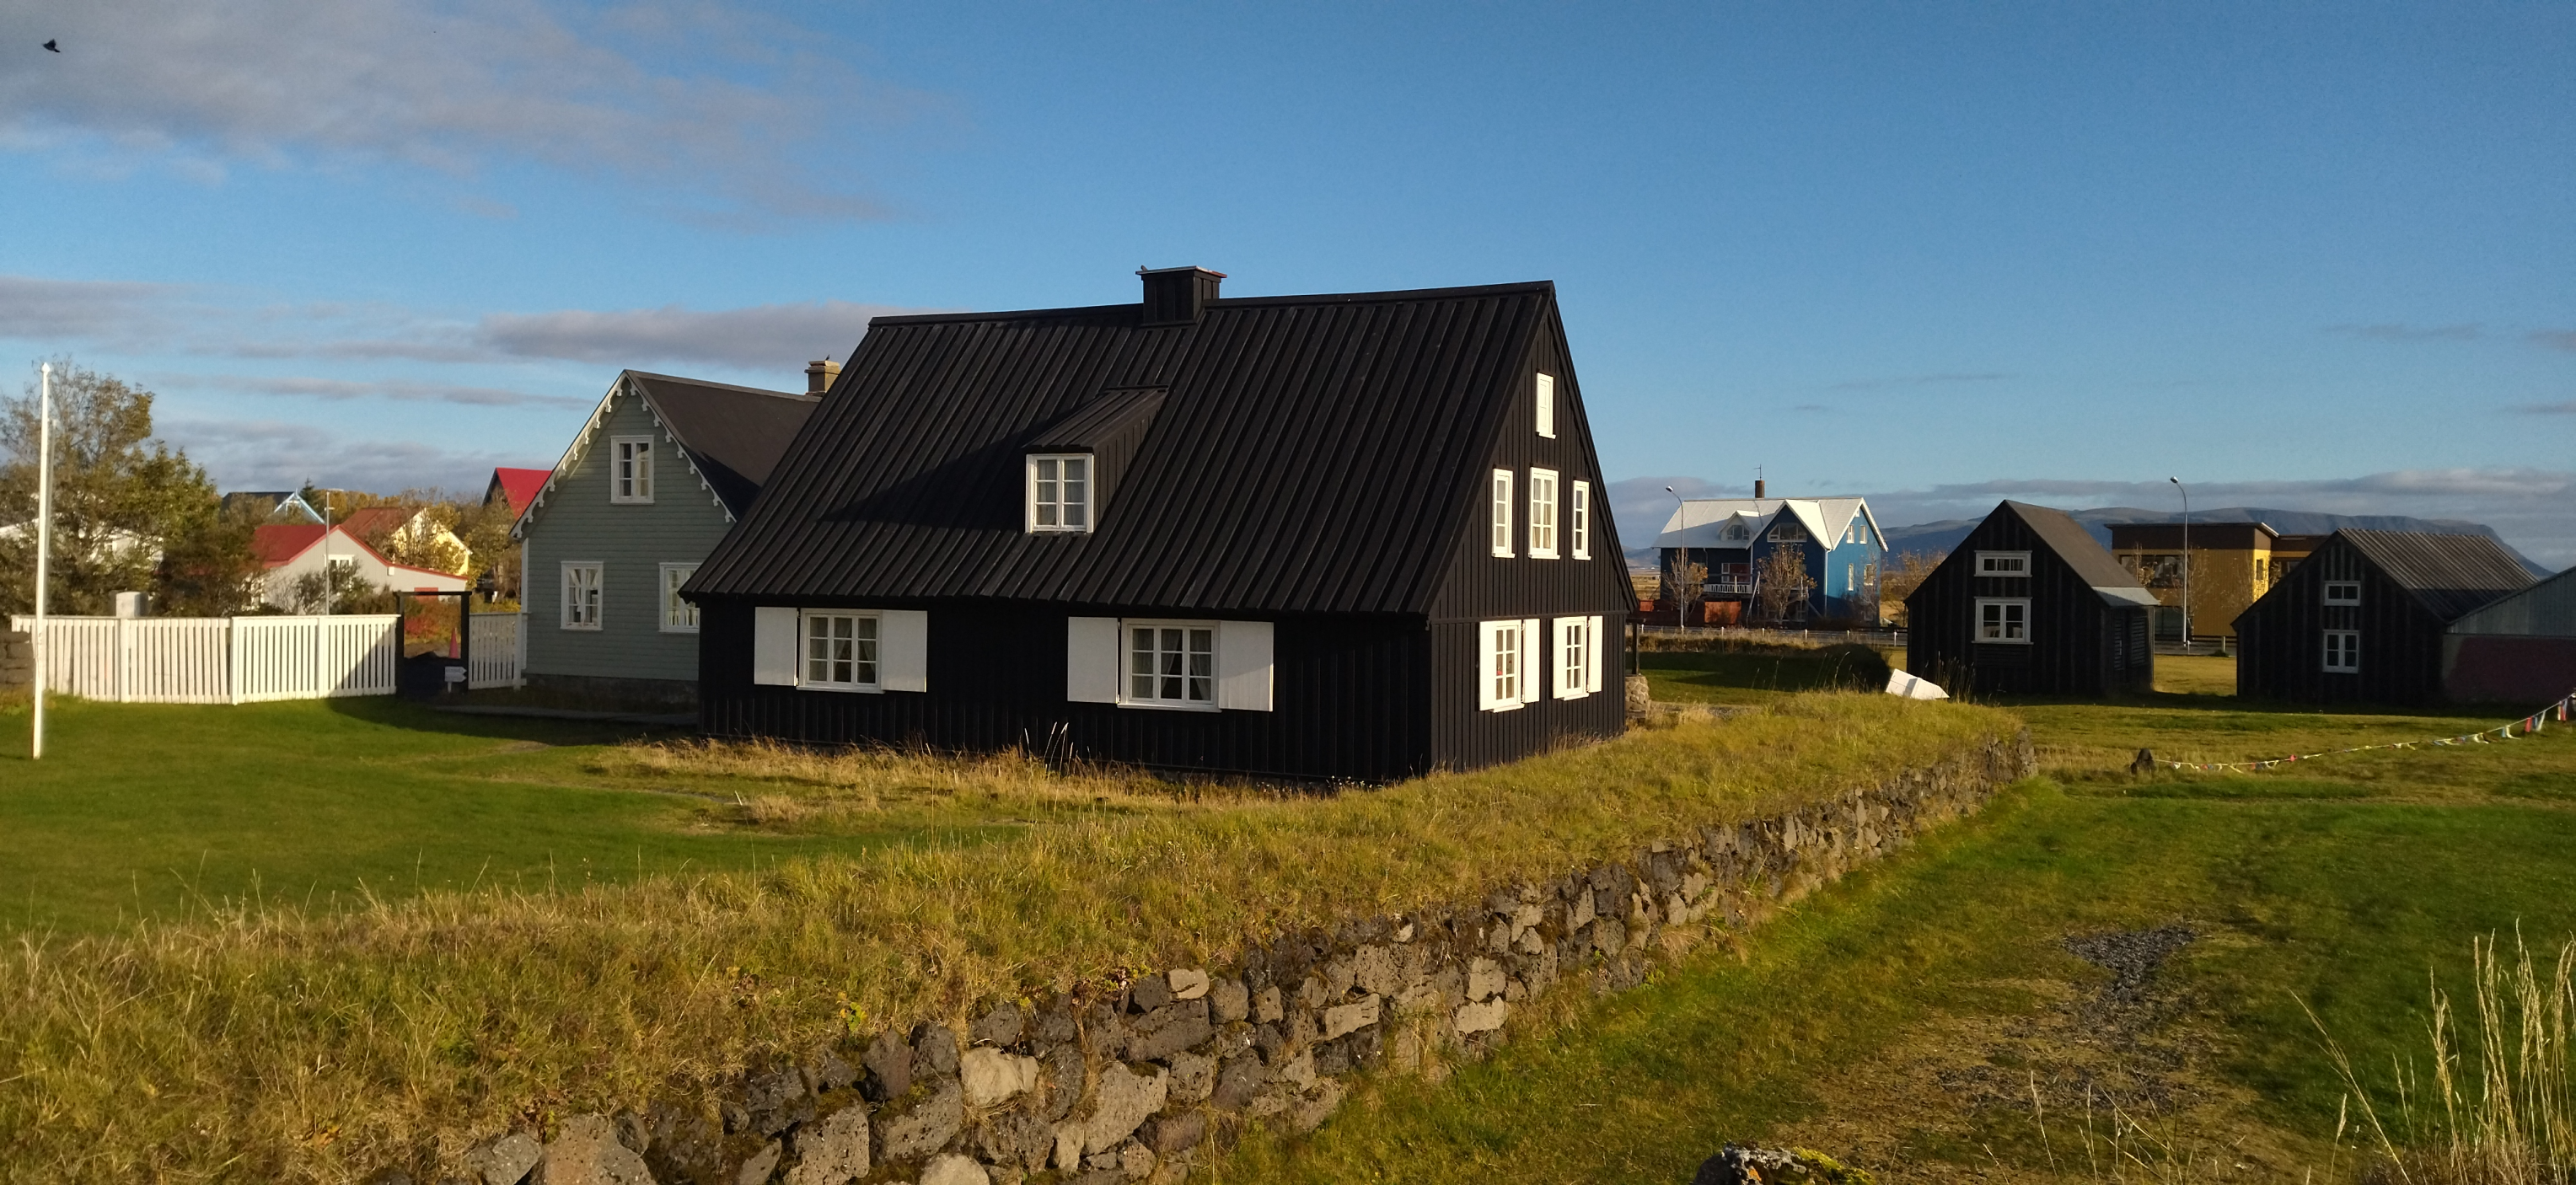 Izland leöregebb faháza, népművészeti múzeum.